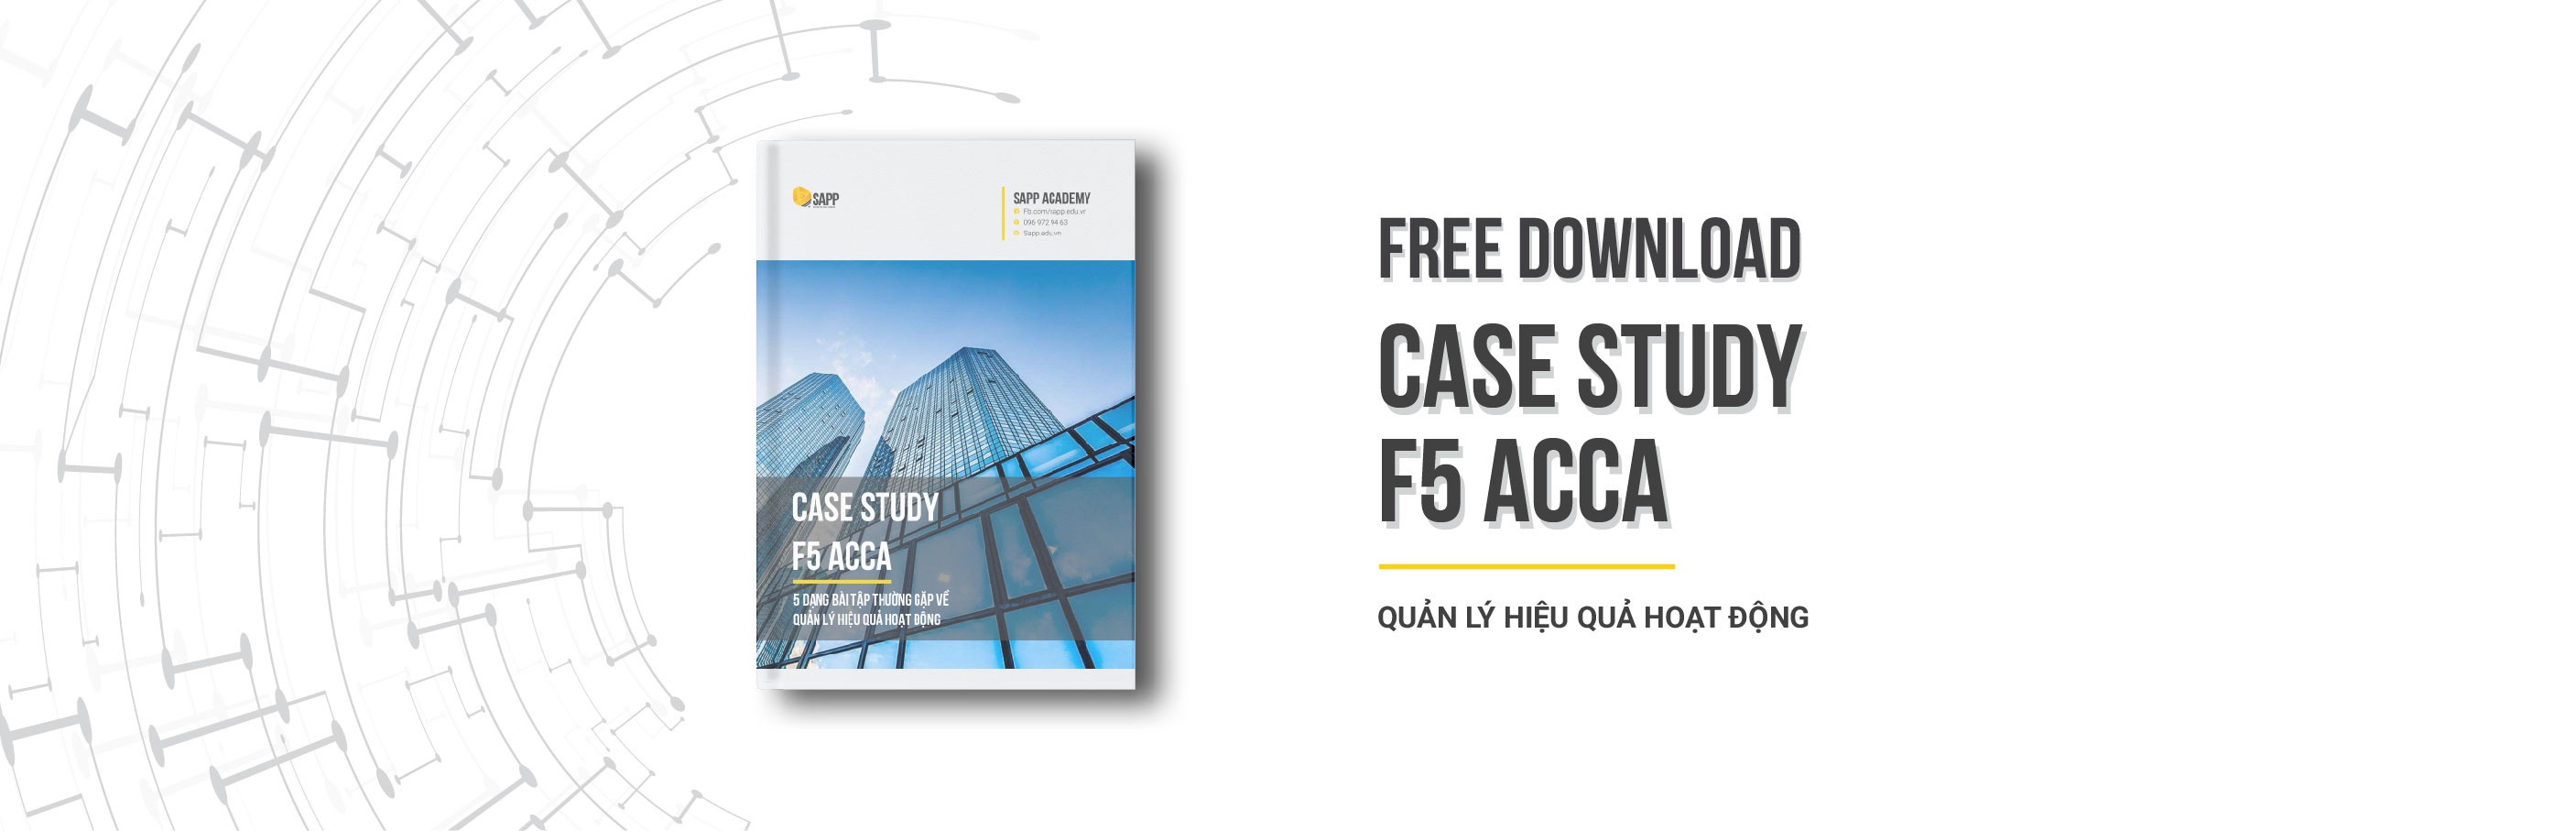 Case Study F5 ACCA 5 Dạng Bài Tập Phổ Biến Về Quản Lý Hiệu Quả Hoạt Động